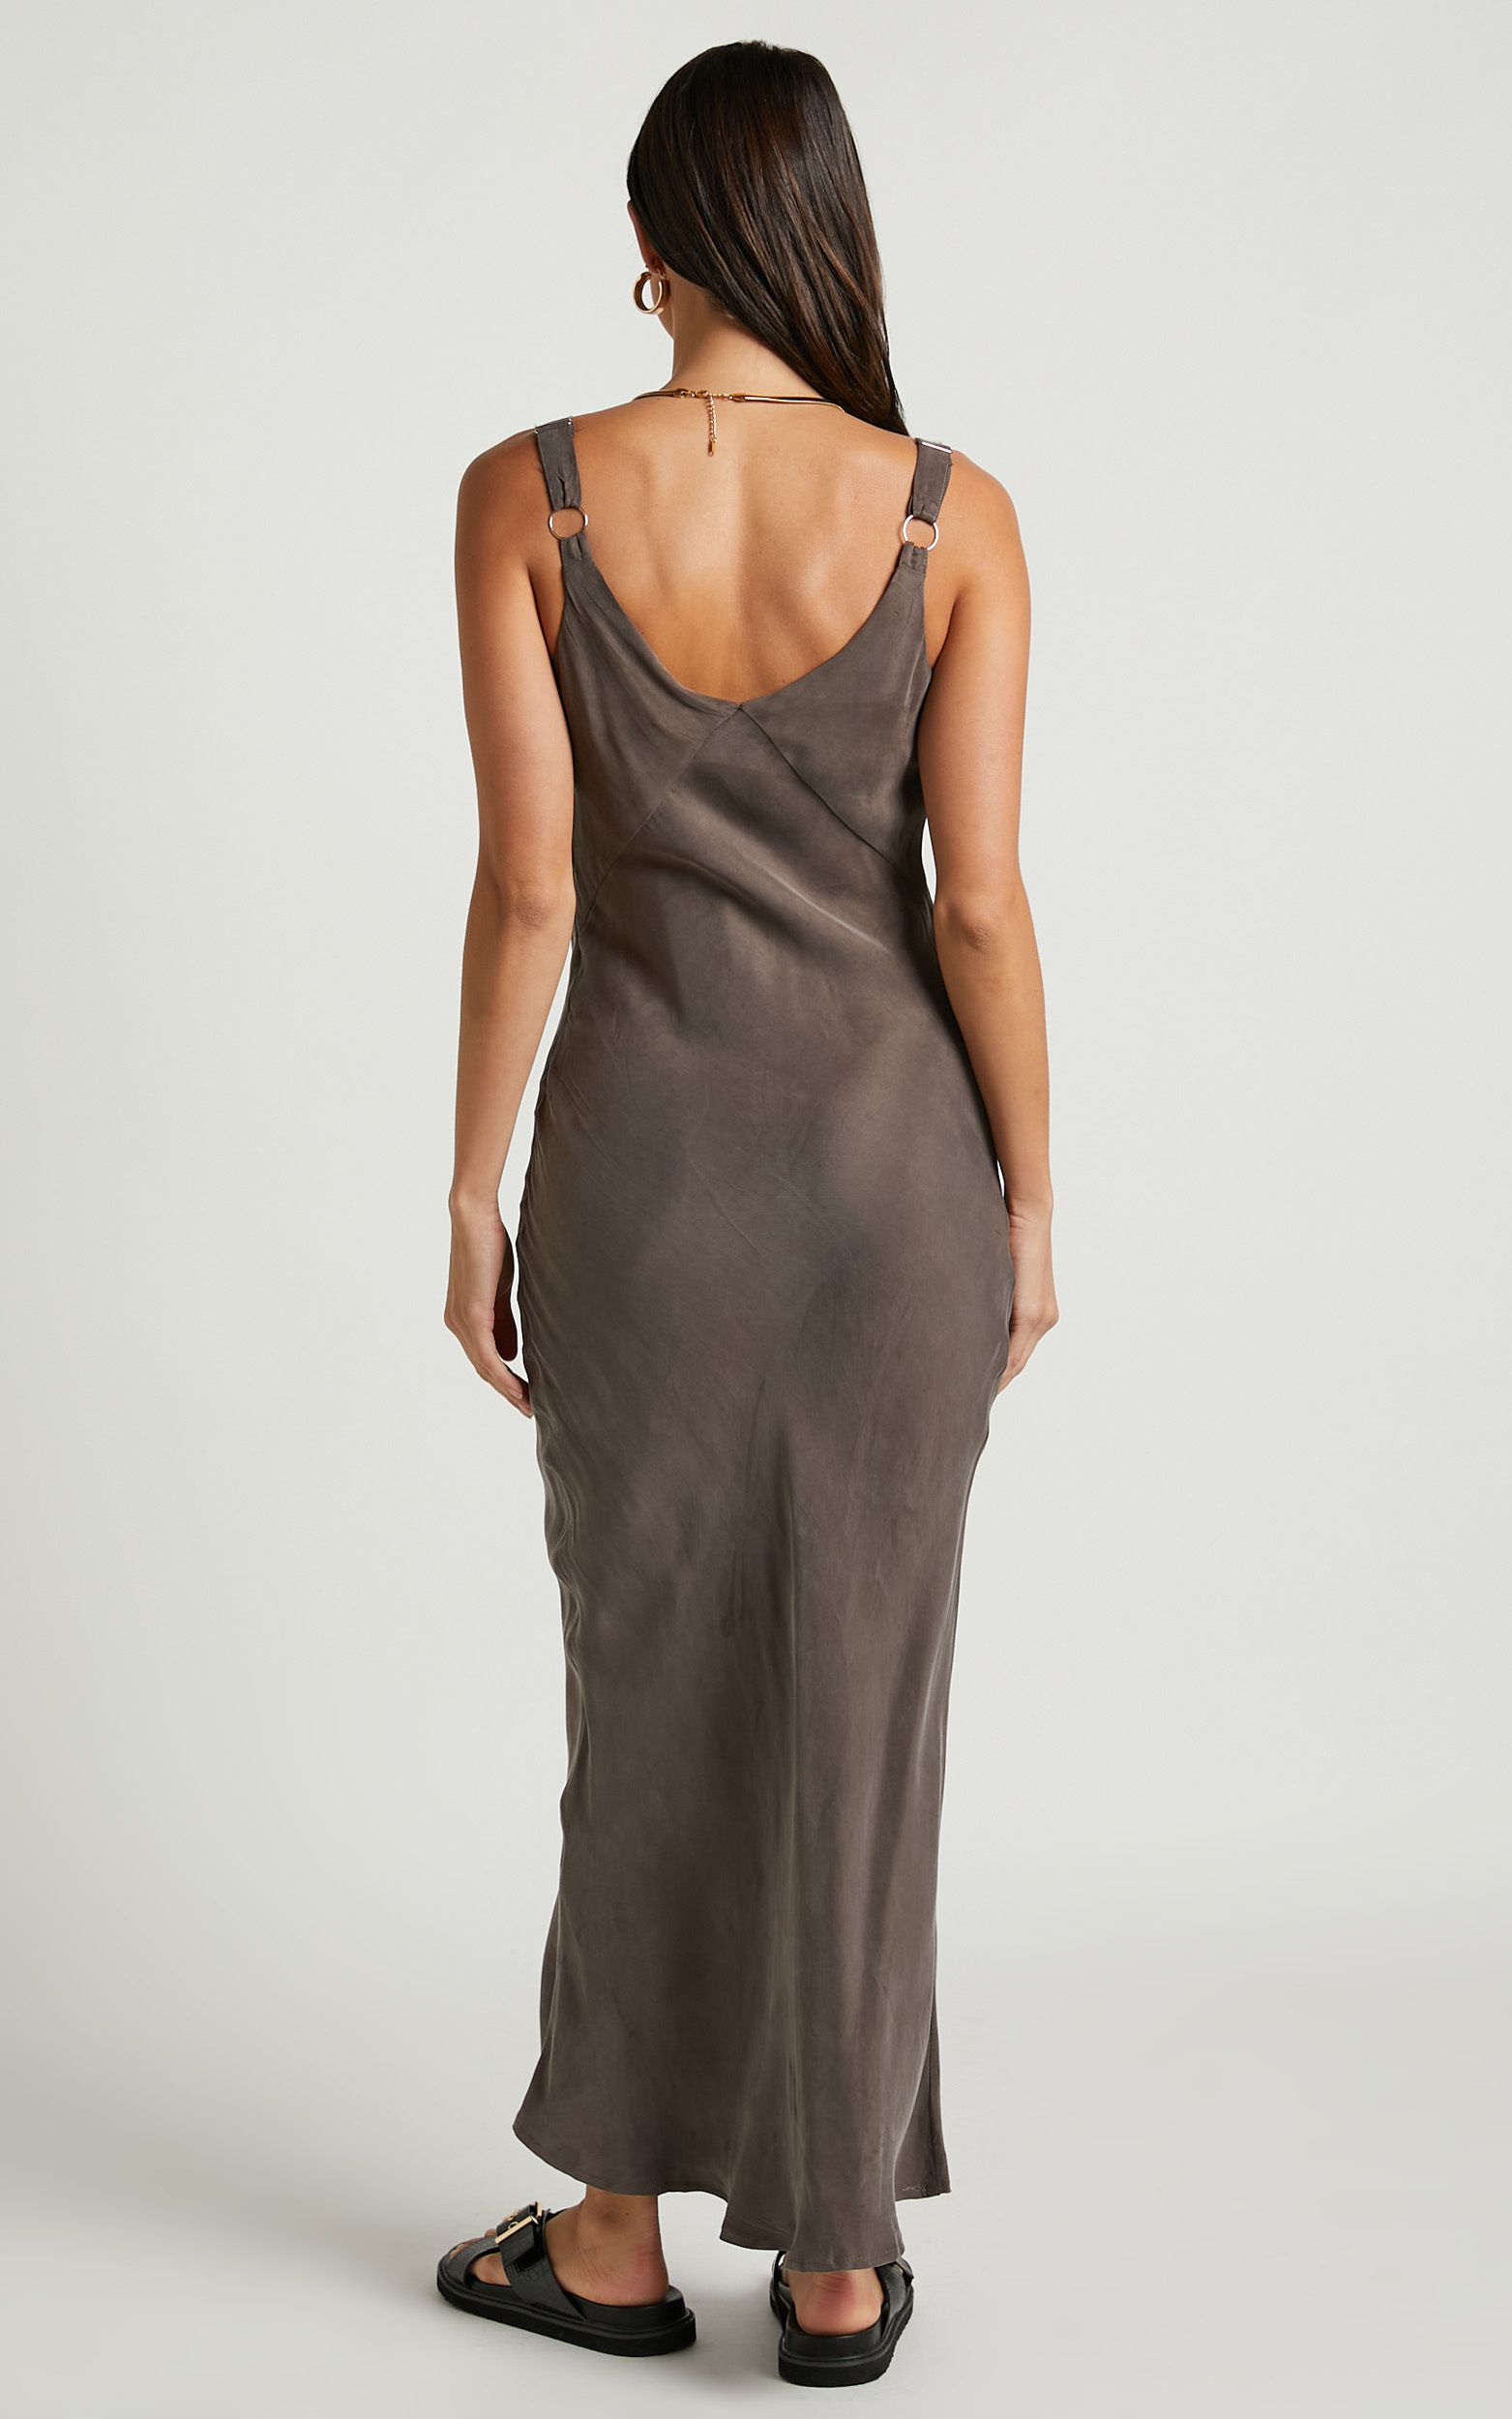 Kaya Midi Dress - Cupro Slip Dress in Warm Grey | Showpo USA